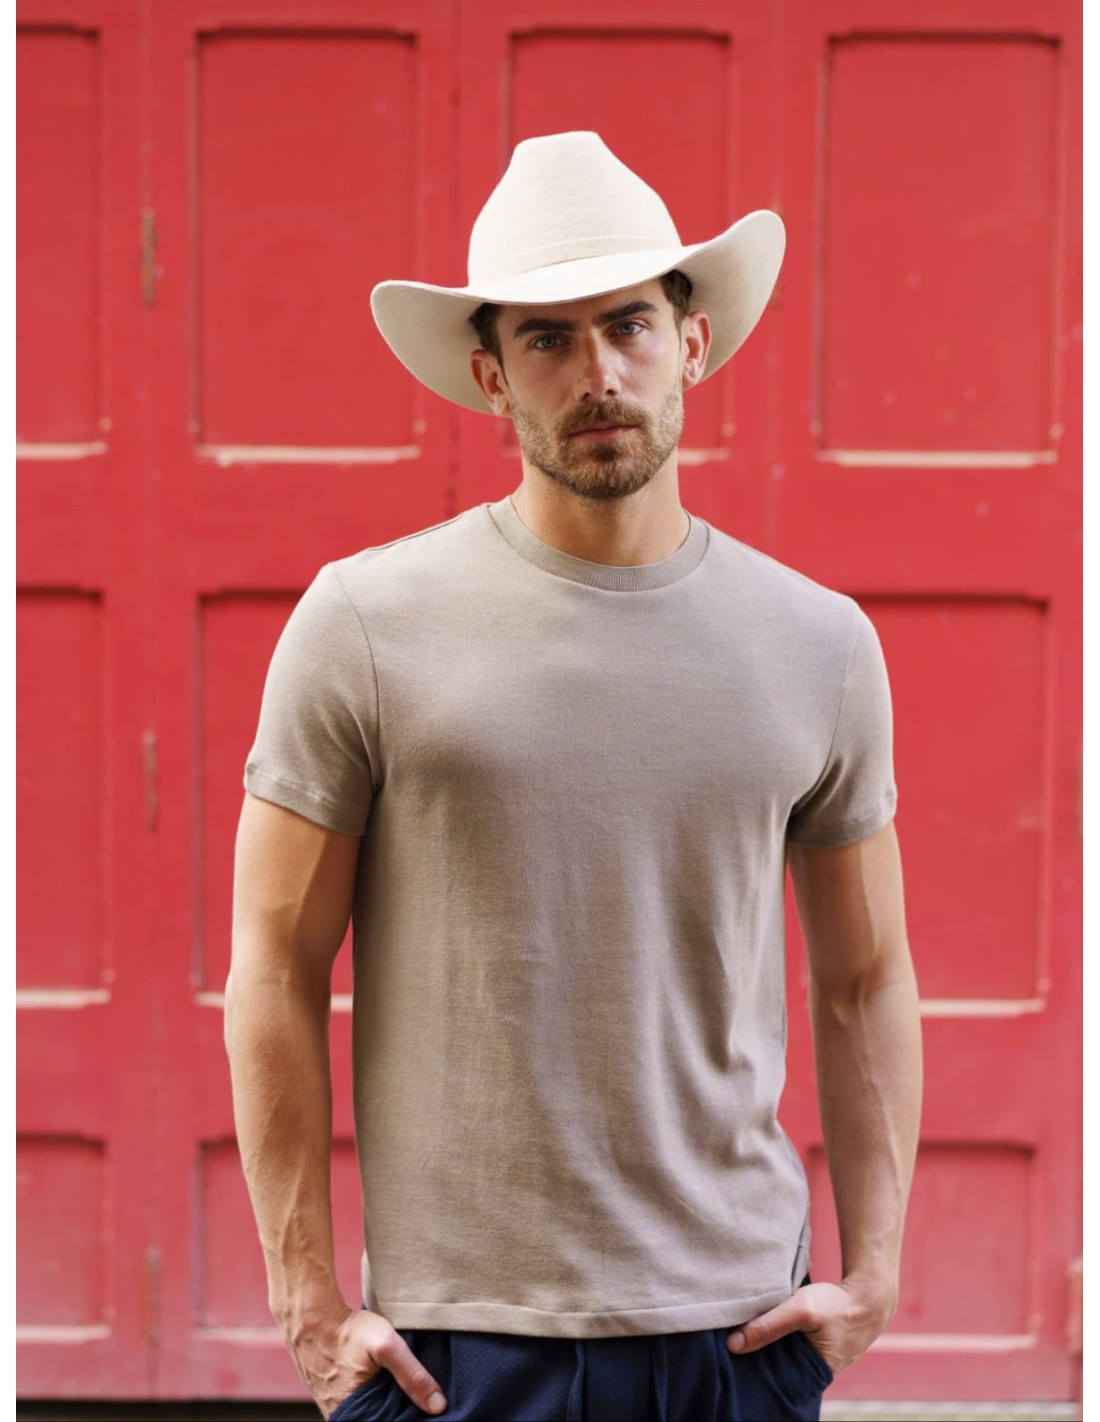 Sombrero Dallas Cowboy Hecho en España – 100% Fieltro de Lana